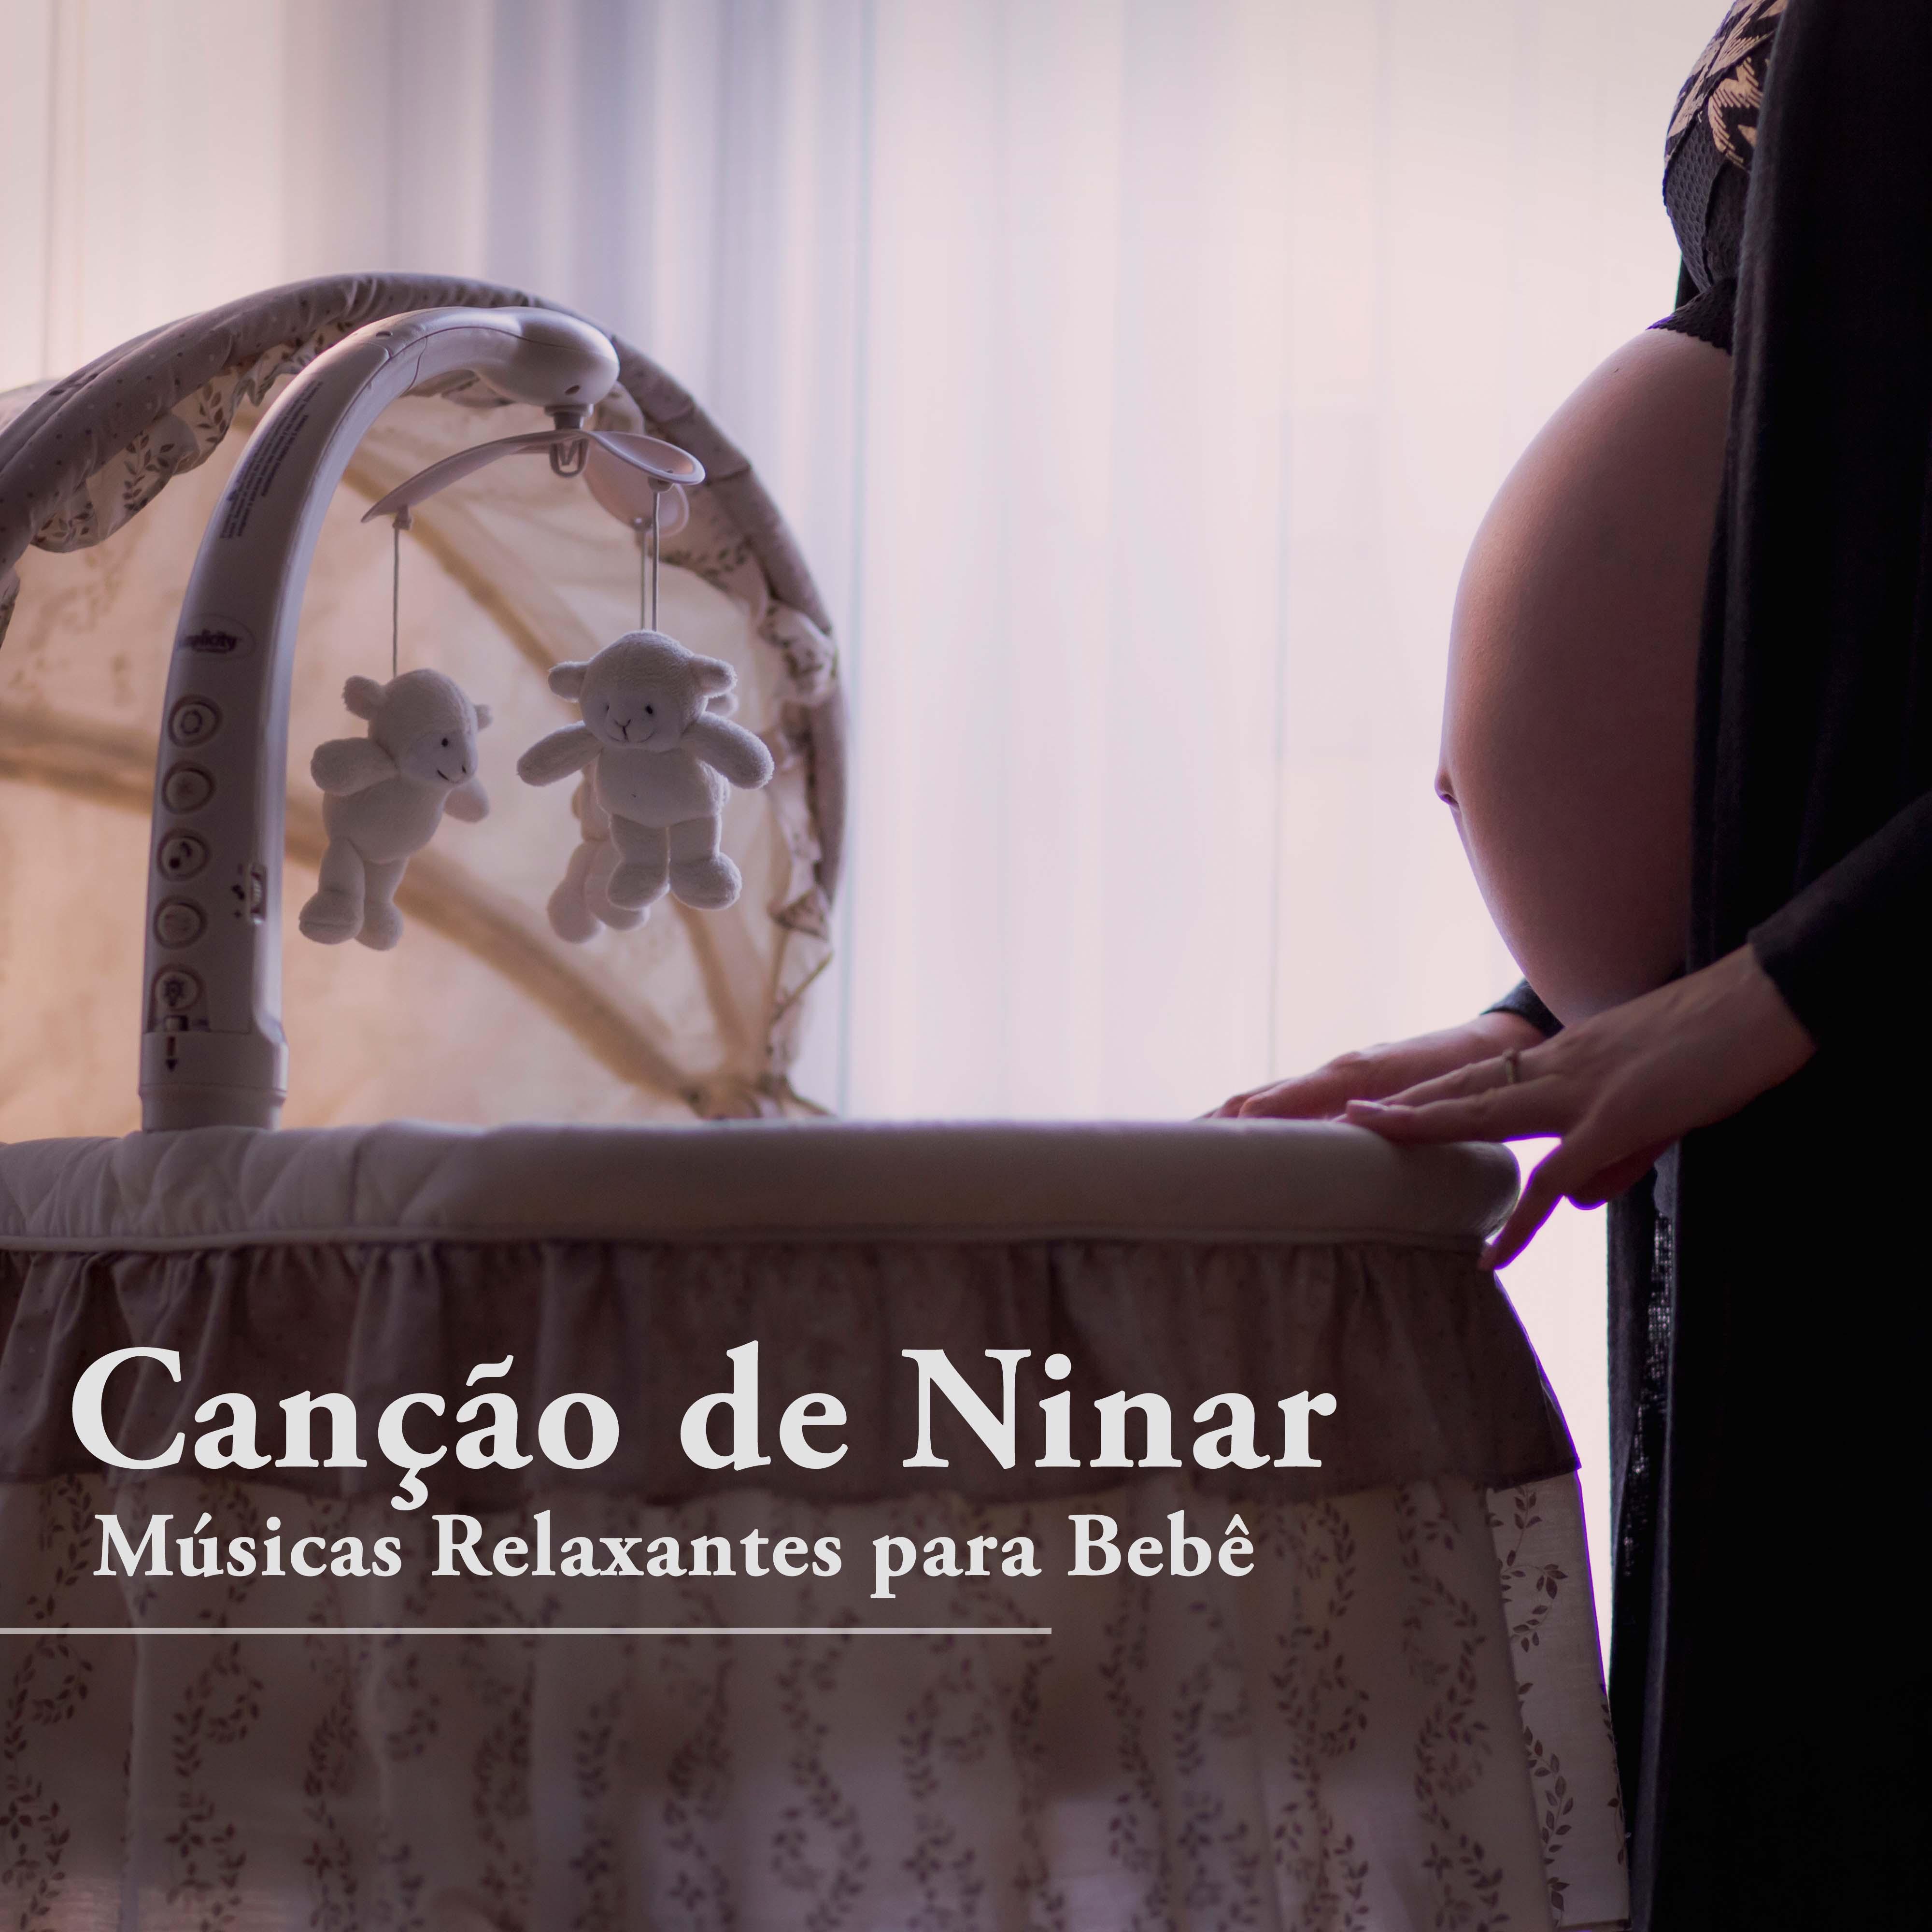 Canção de Ninar: Musicas Relaxantes para Bebe